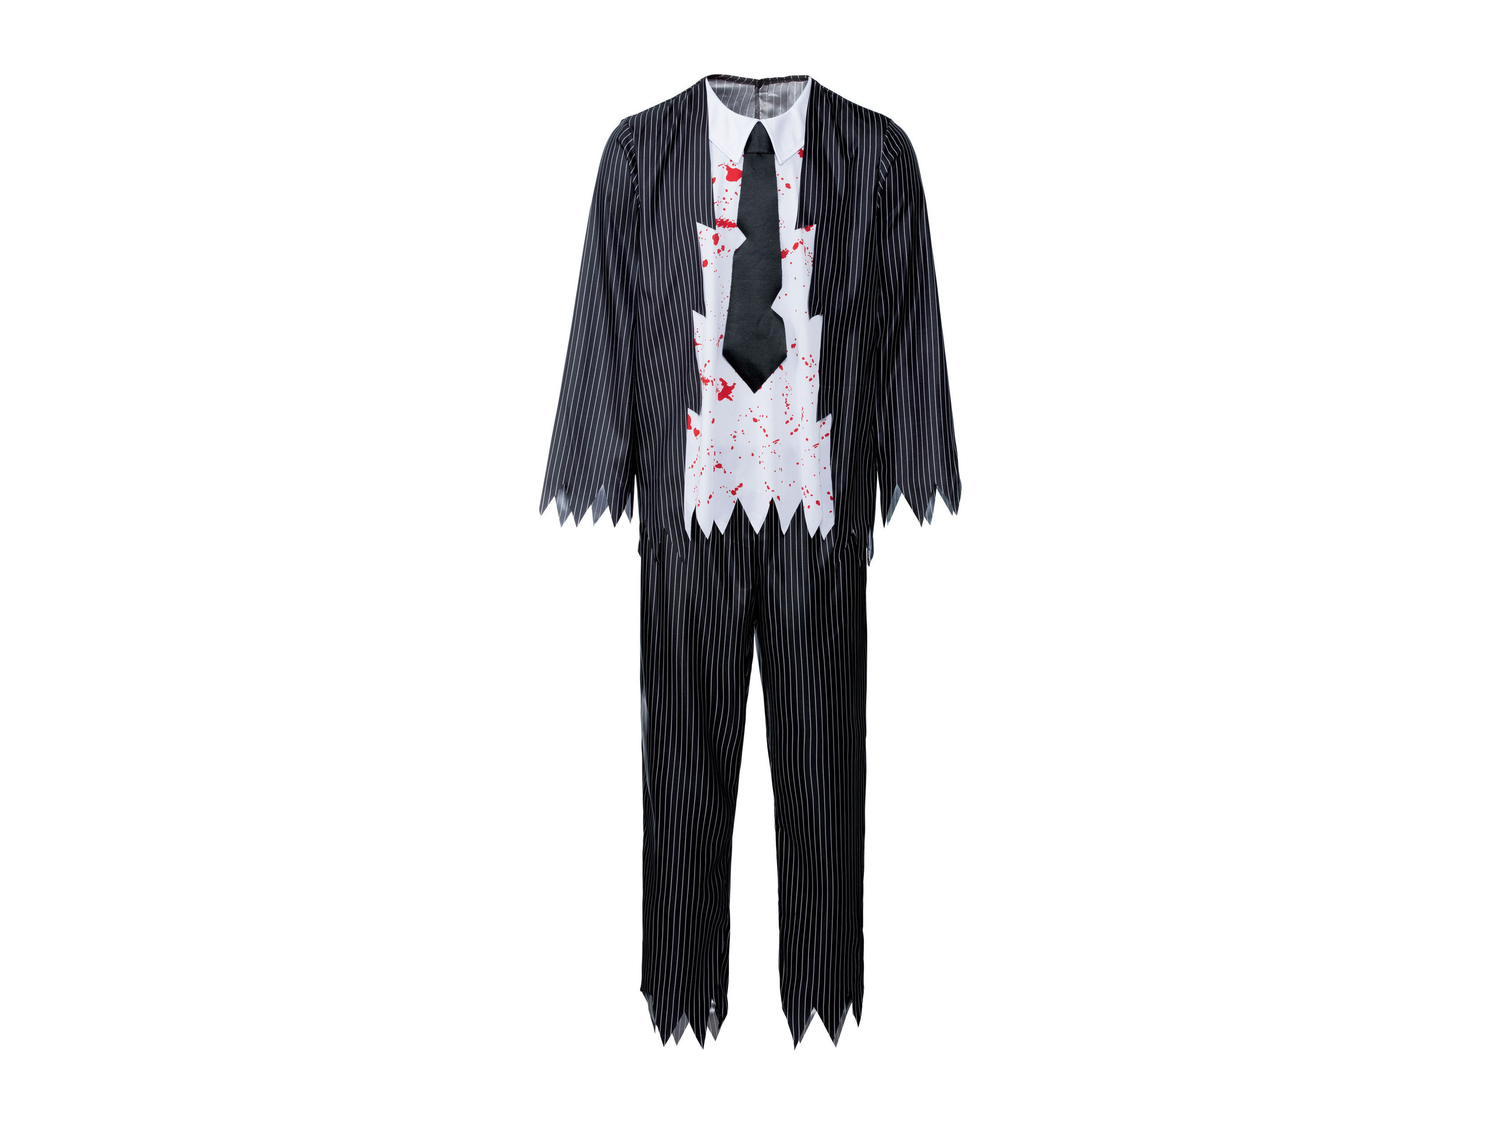 Costume di Halloween per uomo Sgs_tuv_saar, prezzo 9.99 &#8364; 
Misure: M-XL
Taglie ...